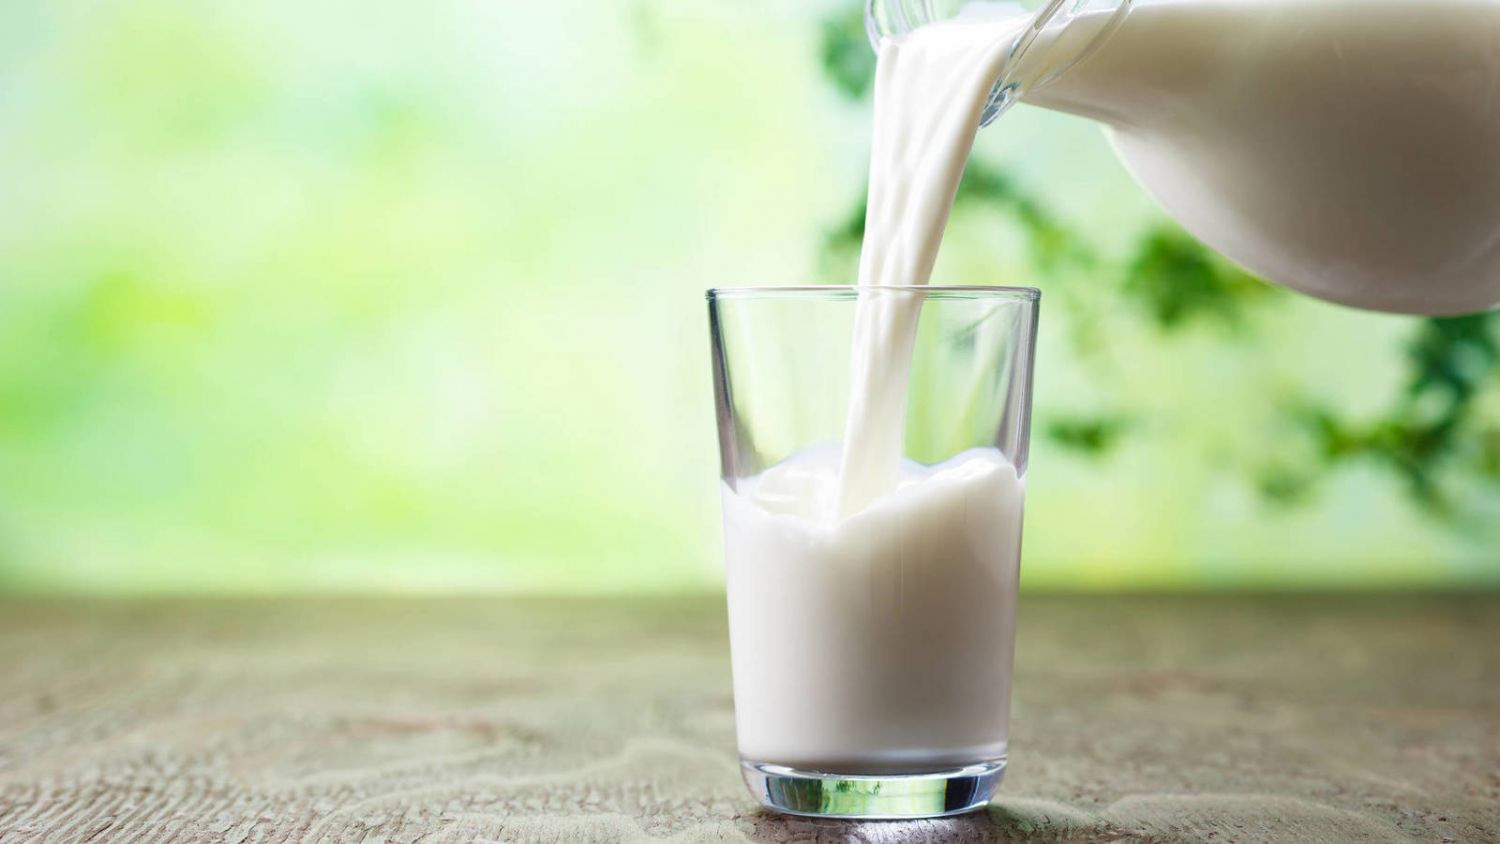 Leches semidesnatadas, ¿cuál es la mejor?, ALIMENTACIÓN 🥛 Analizamos 38  marcas de leche semi: buenos resultados globales, aunque el proceso  industrial y la degustación marcan diferencias., By OCU